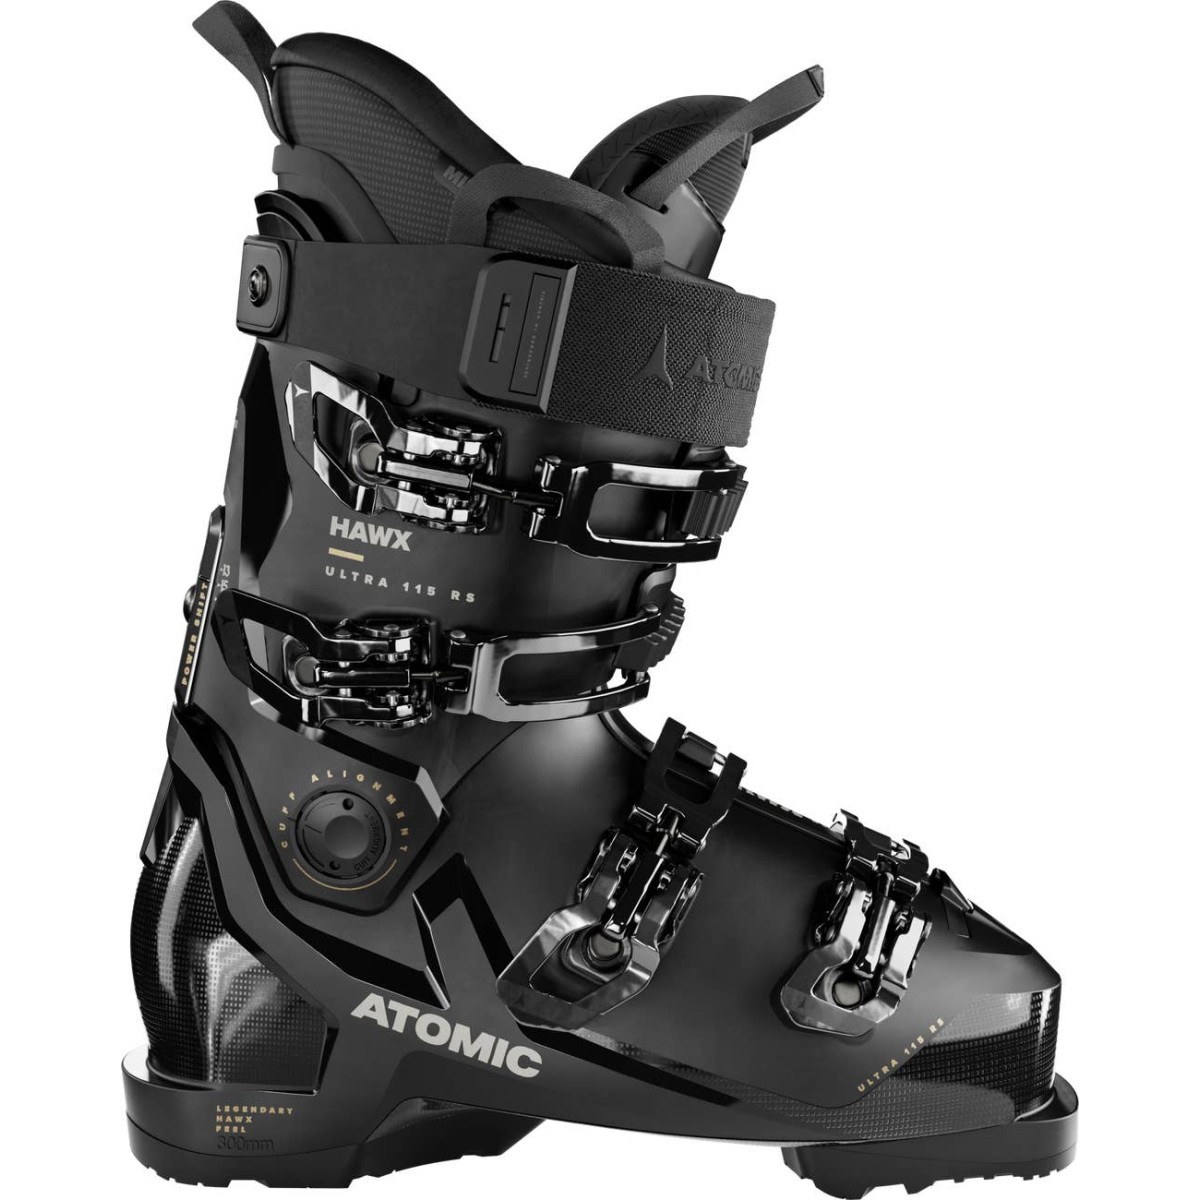 ATOMIC HAWX ULTRA 115 RS W GW alpine ski boots - black